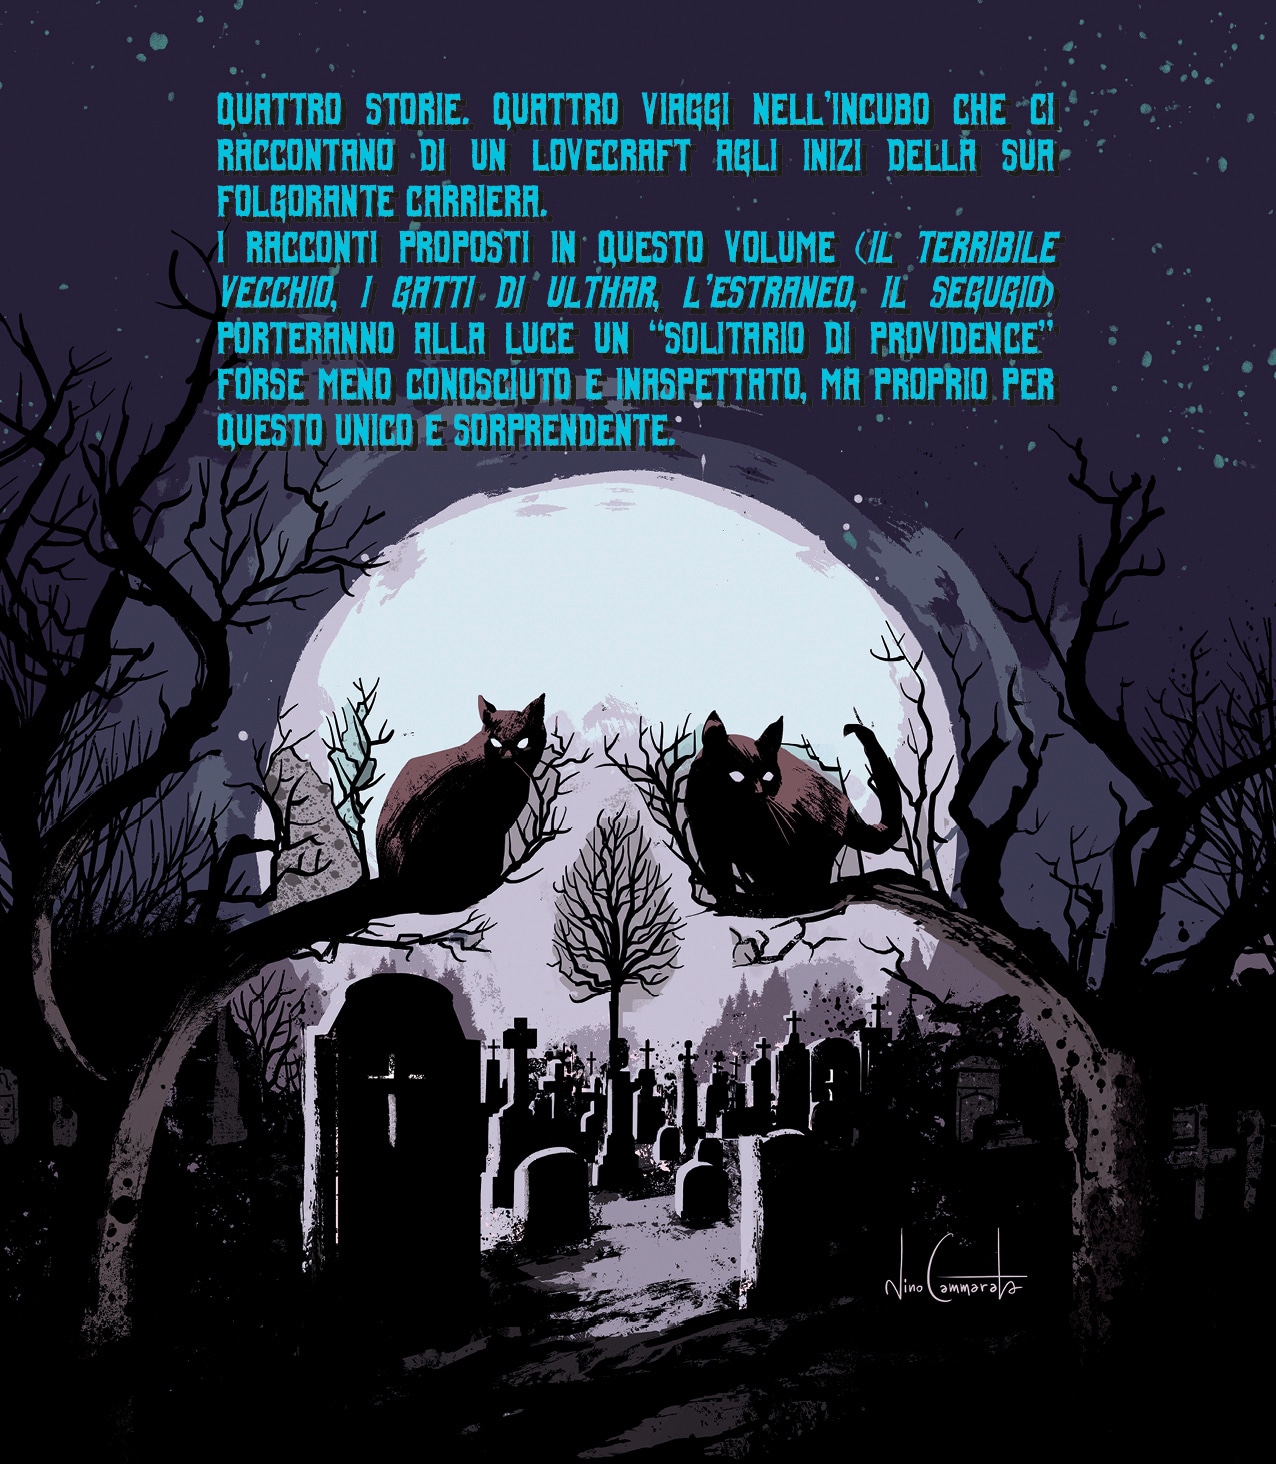  "I gatti di Ulthar e altri racconti" di H.P. Lovecraft, Giuseppe Congedo e Antonio Montano (Edizioni NPE)